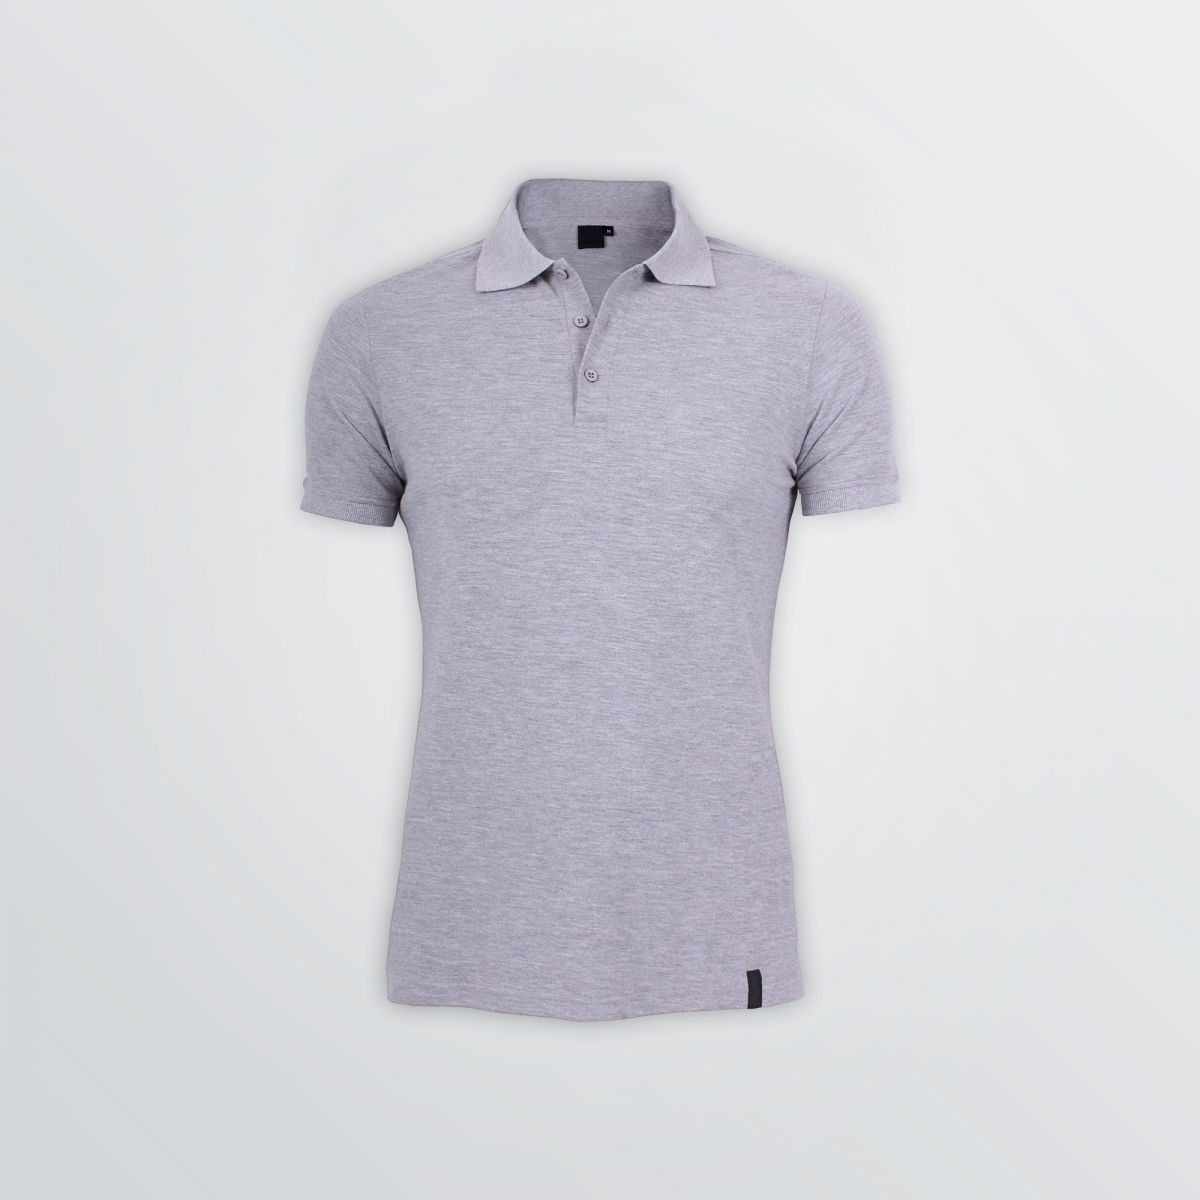 Basic Cotton Polo in modischem Schnitt zum Individualisieren als Produktbeispiel in grauer Farbe - Frontansicht